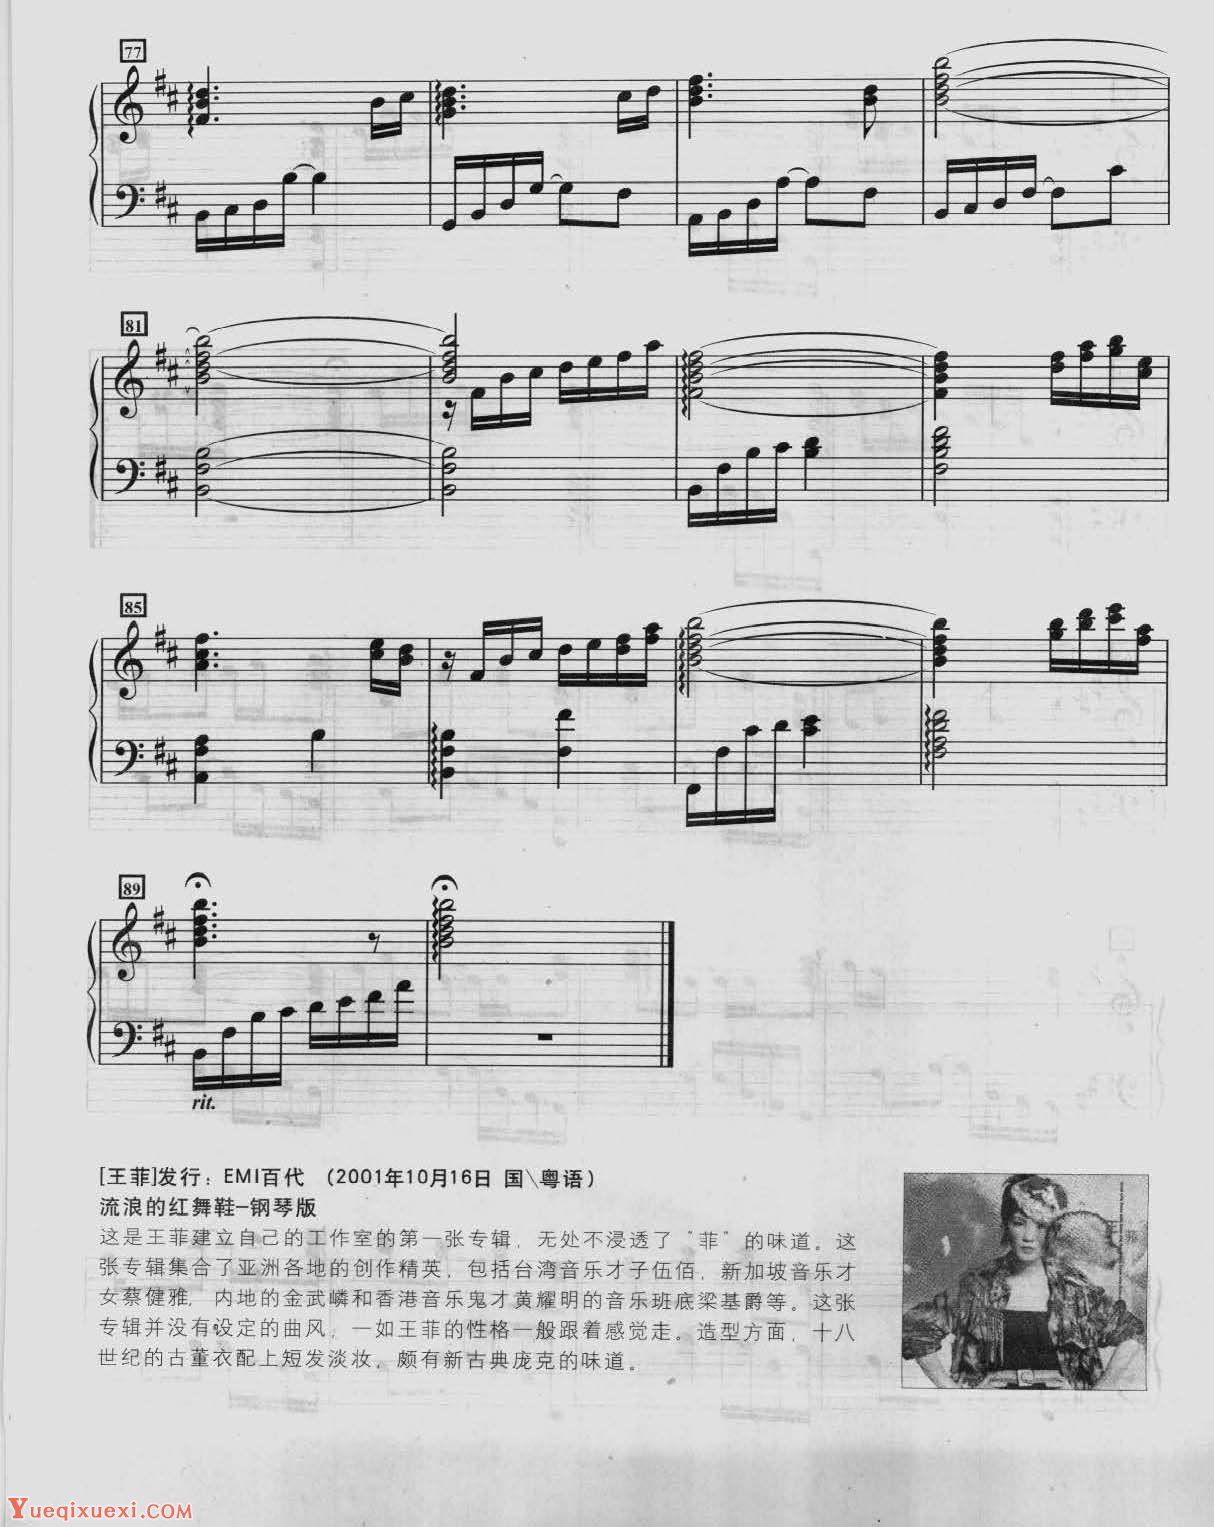 王菲经典歌曲钢琴曲《流年》作词／林夕  作曲／陈懂娟